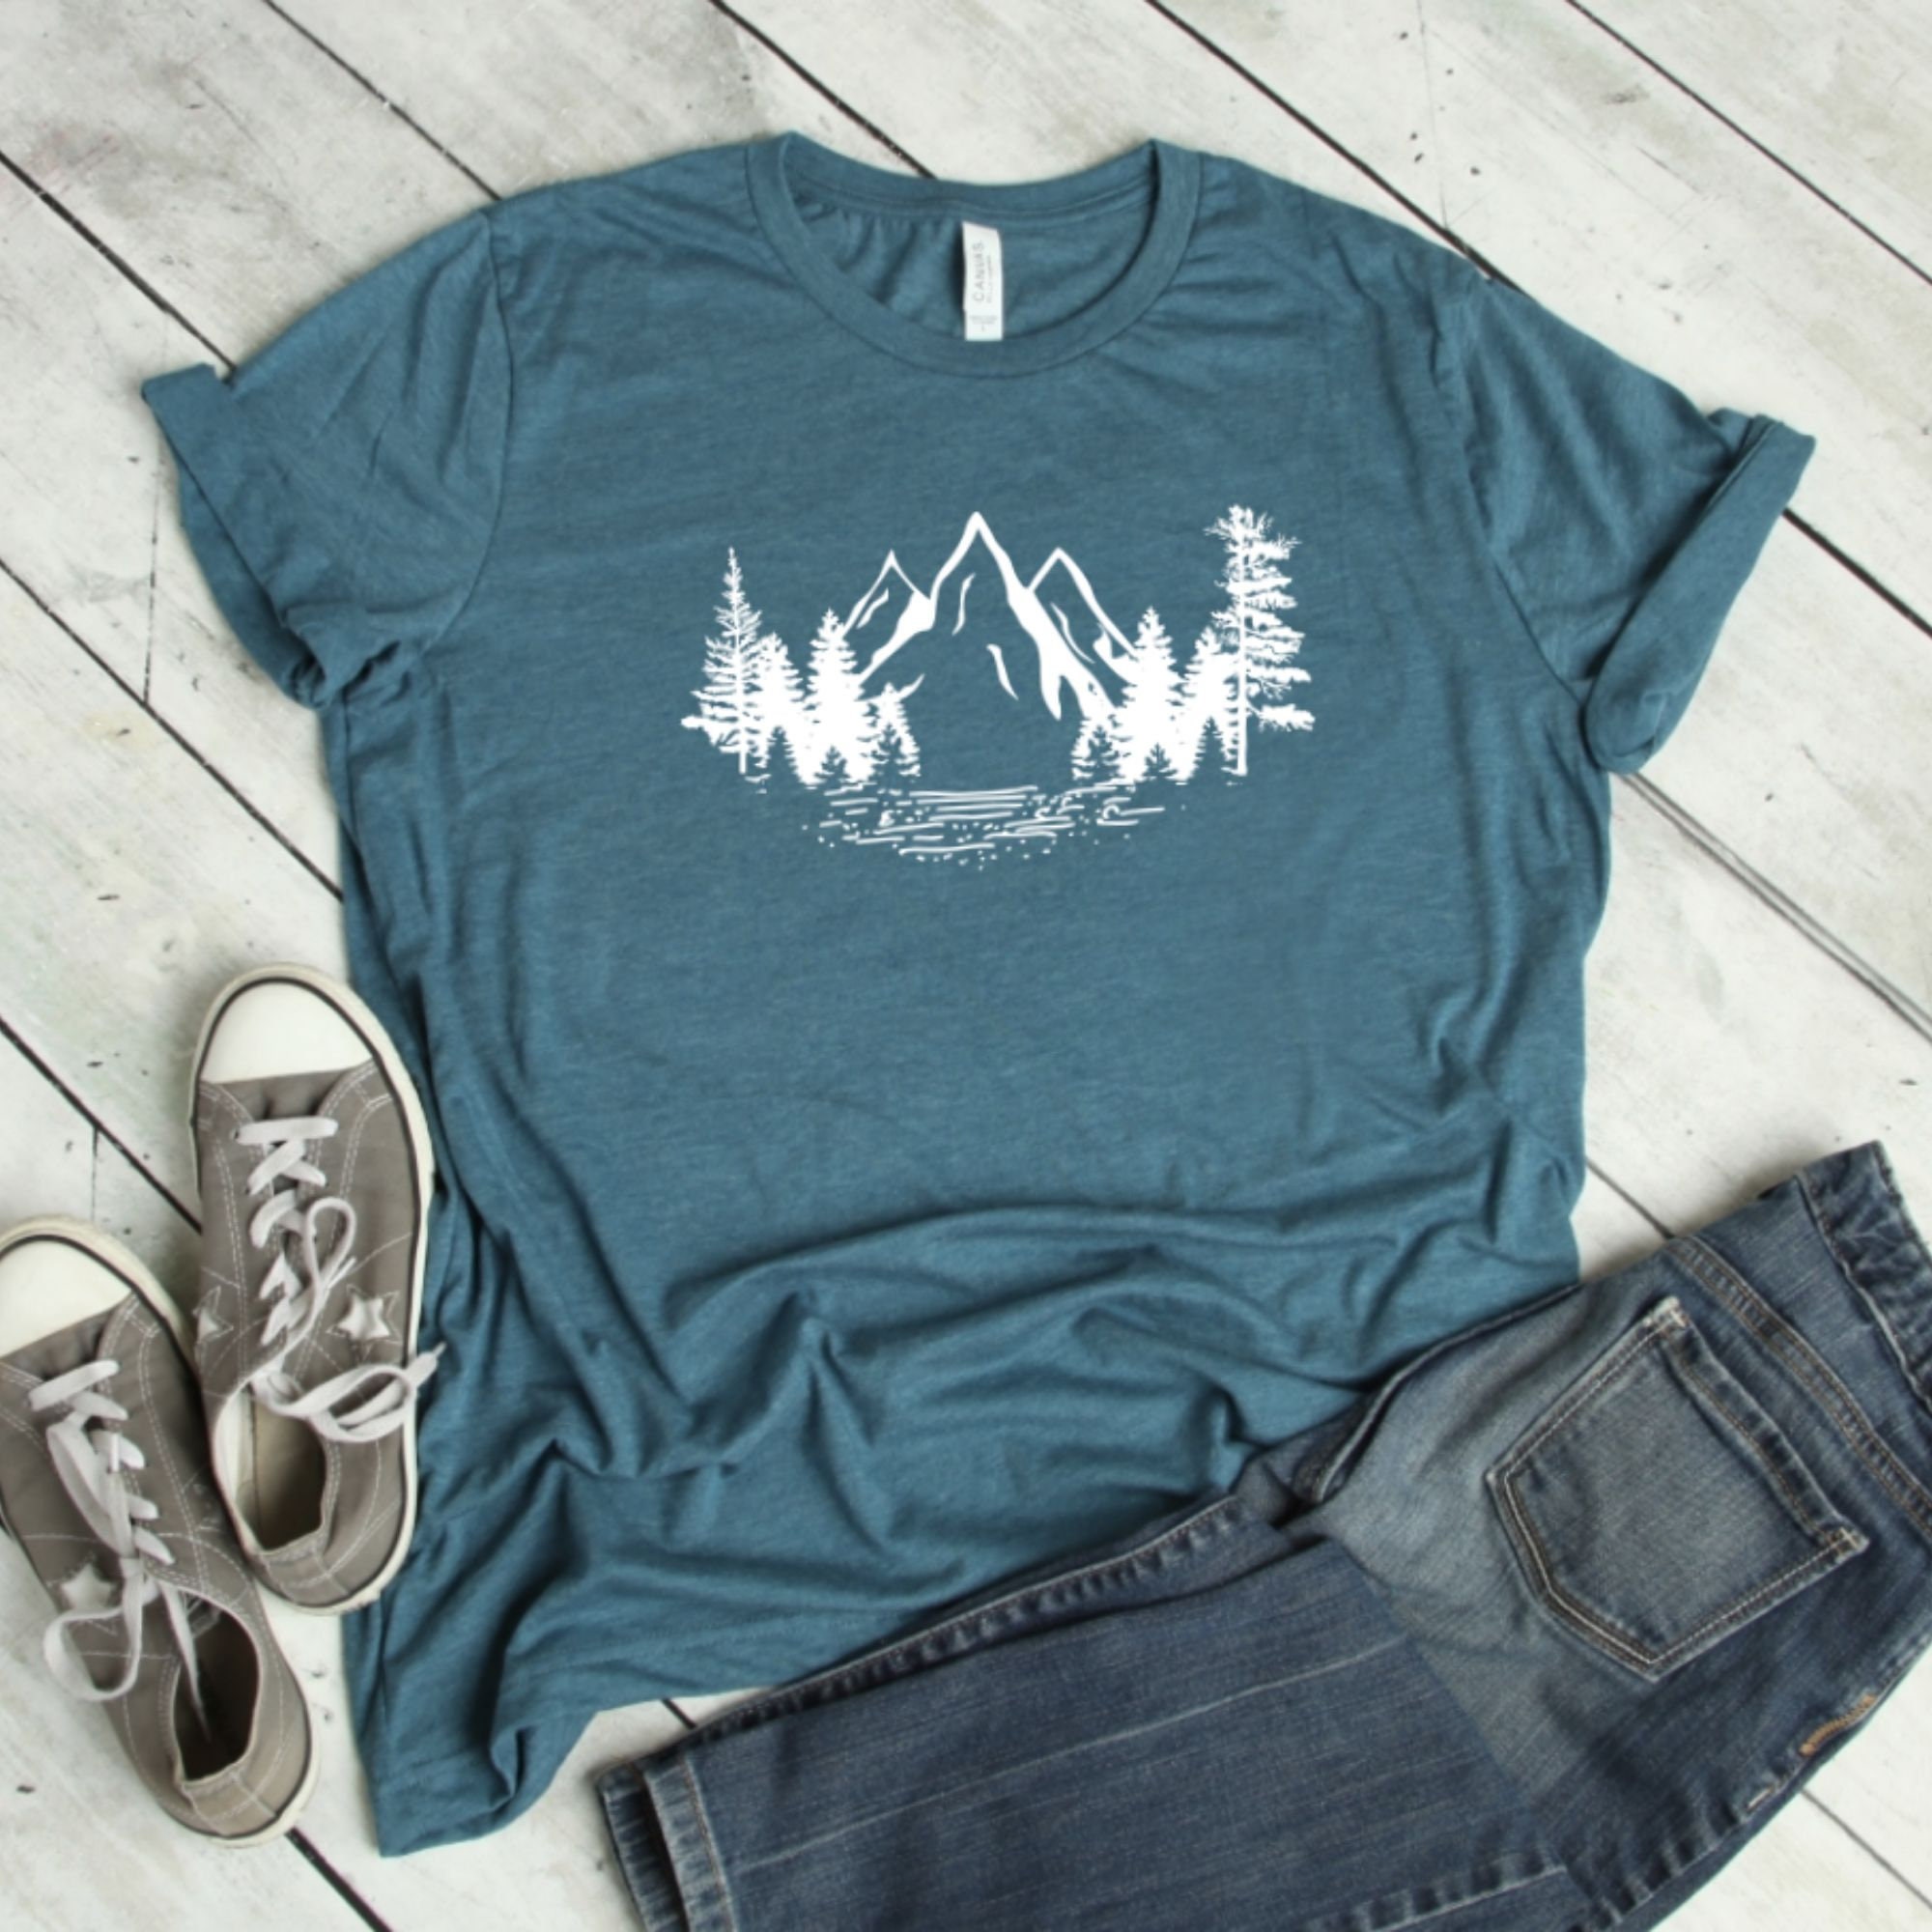 Mountain Shirt Vacation TShirt Adventure Shirt Camping | Etsy